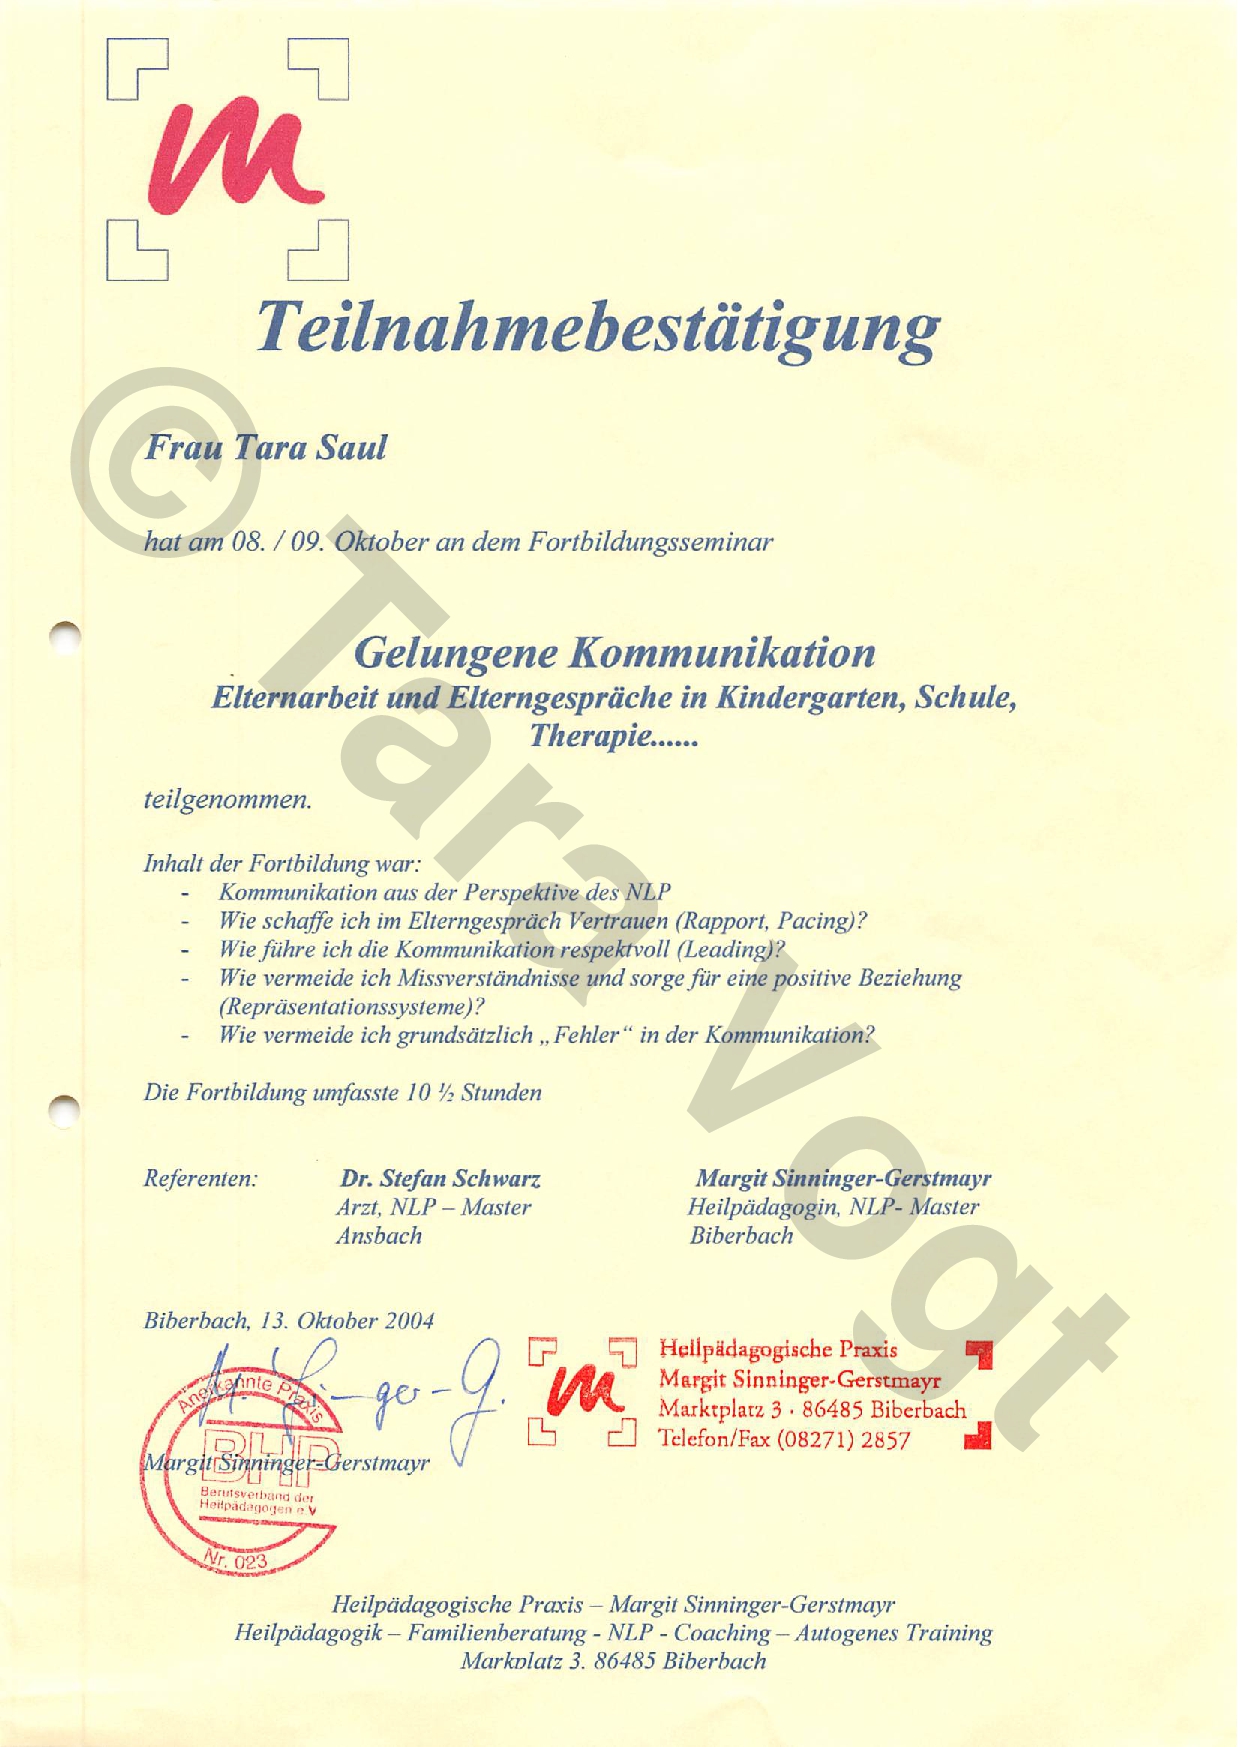 Heilpaedagogische-Praxis_gelungene-Kommunikation